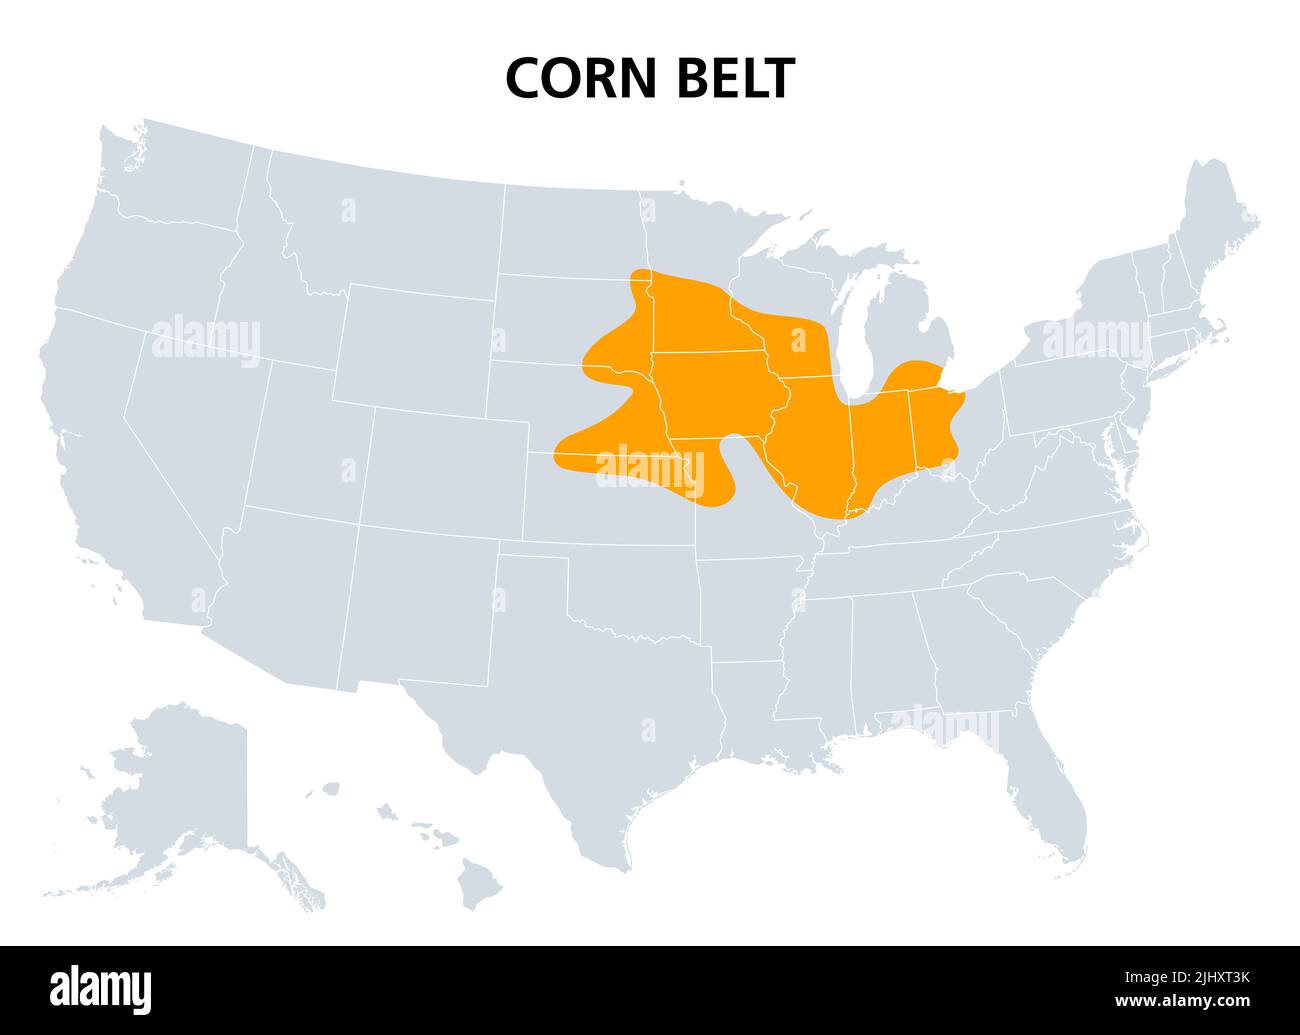 Cinturón de maíz de los Estados Unidos, mapa político. La región en el Medio Oeste americano donde el maíz es el cultivo dominante. Foto de stock